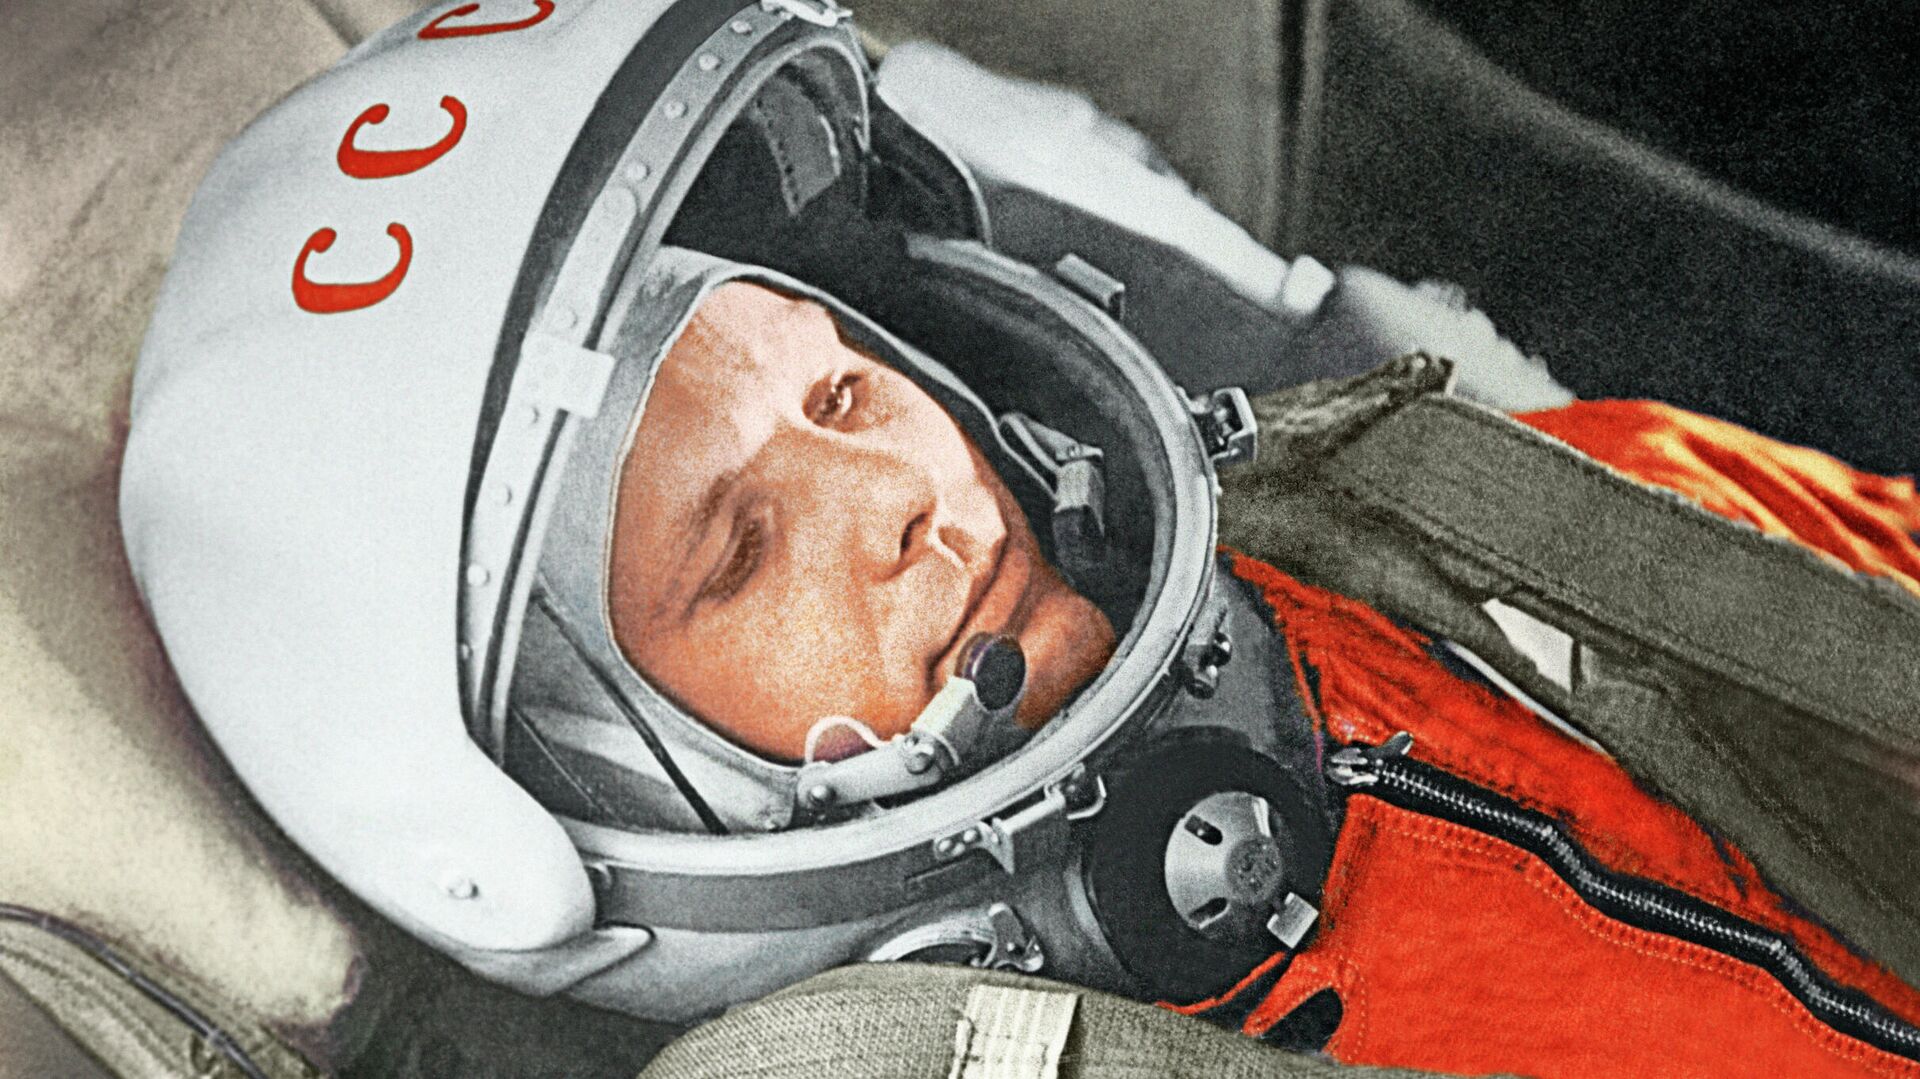 Юрий Гагарин в кабине космического корабля “Восток” во время первого в мире орбитального космического полета 12 апреля 1961 года - РИА Новости, 1920, 17.09.2020